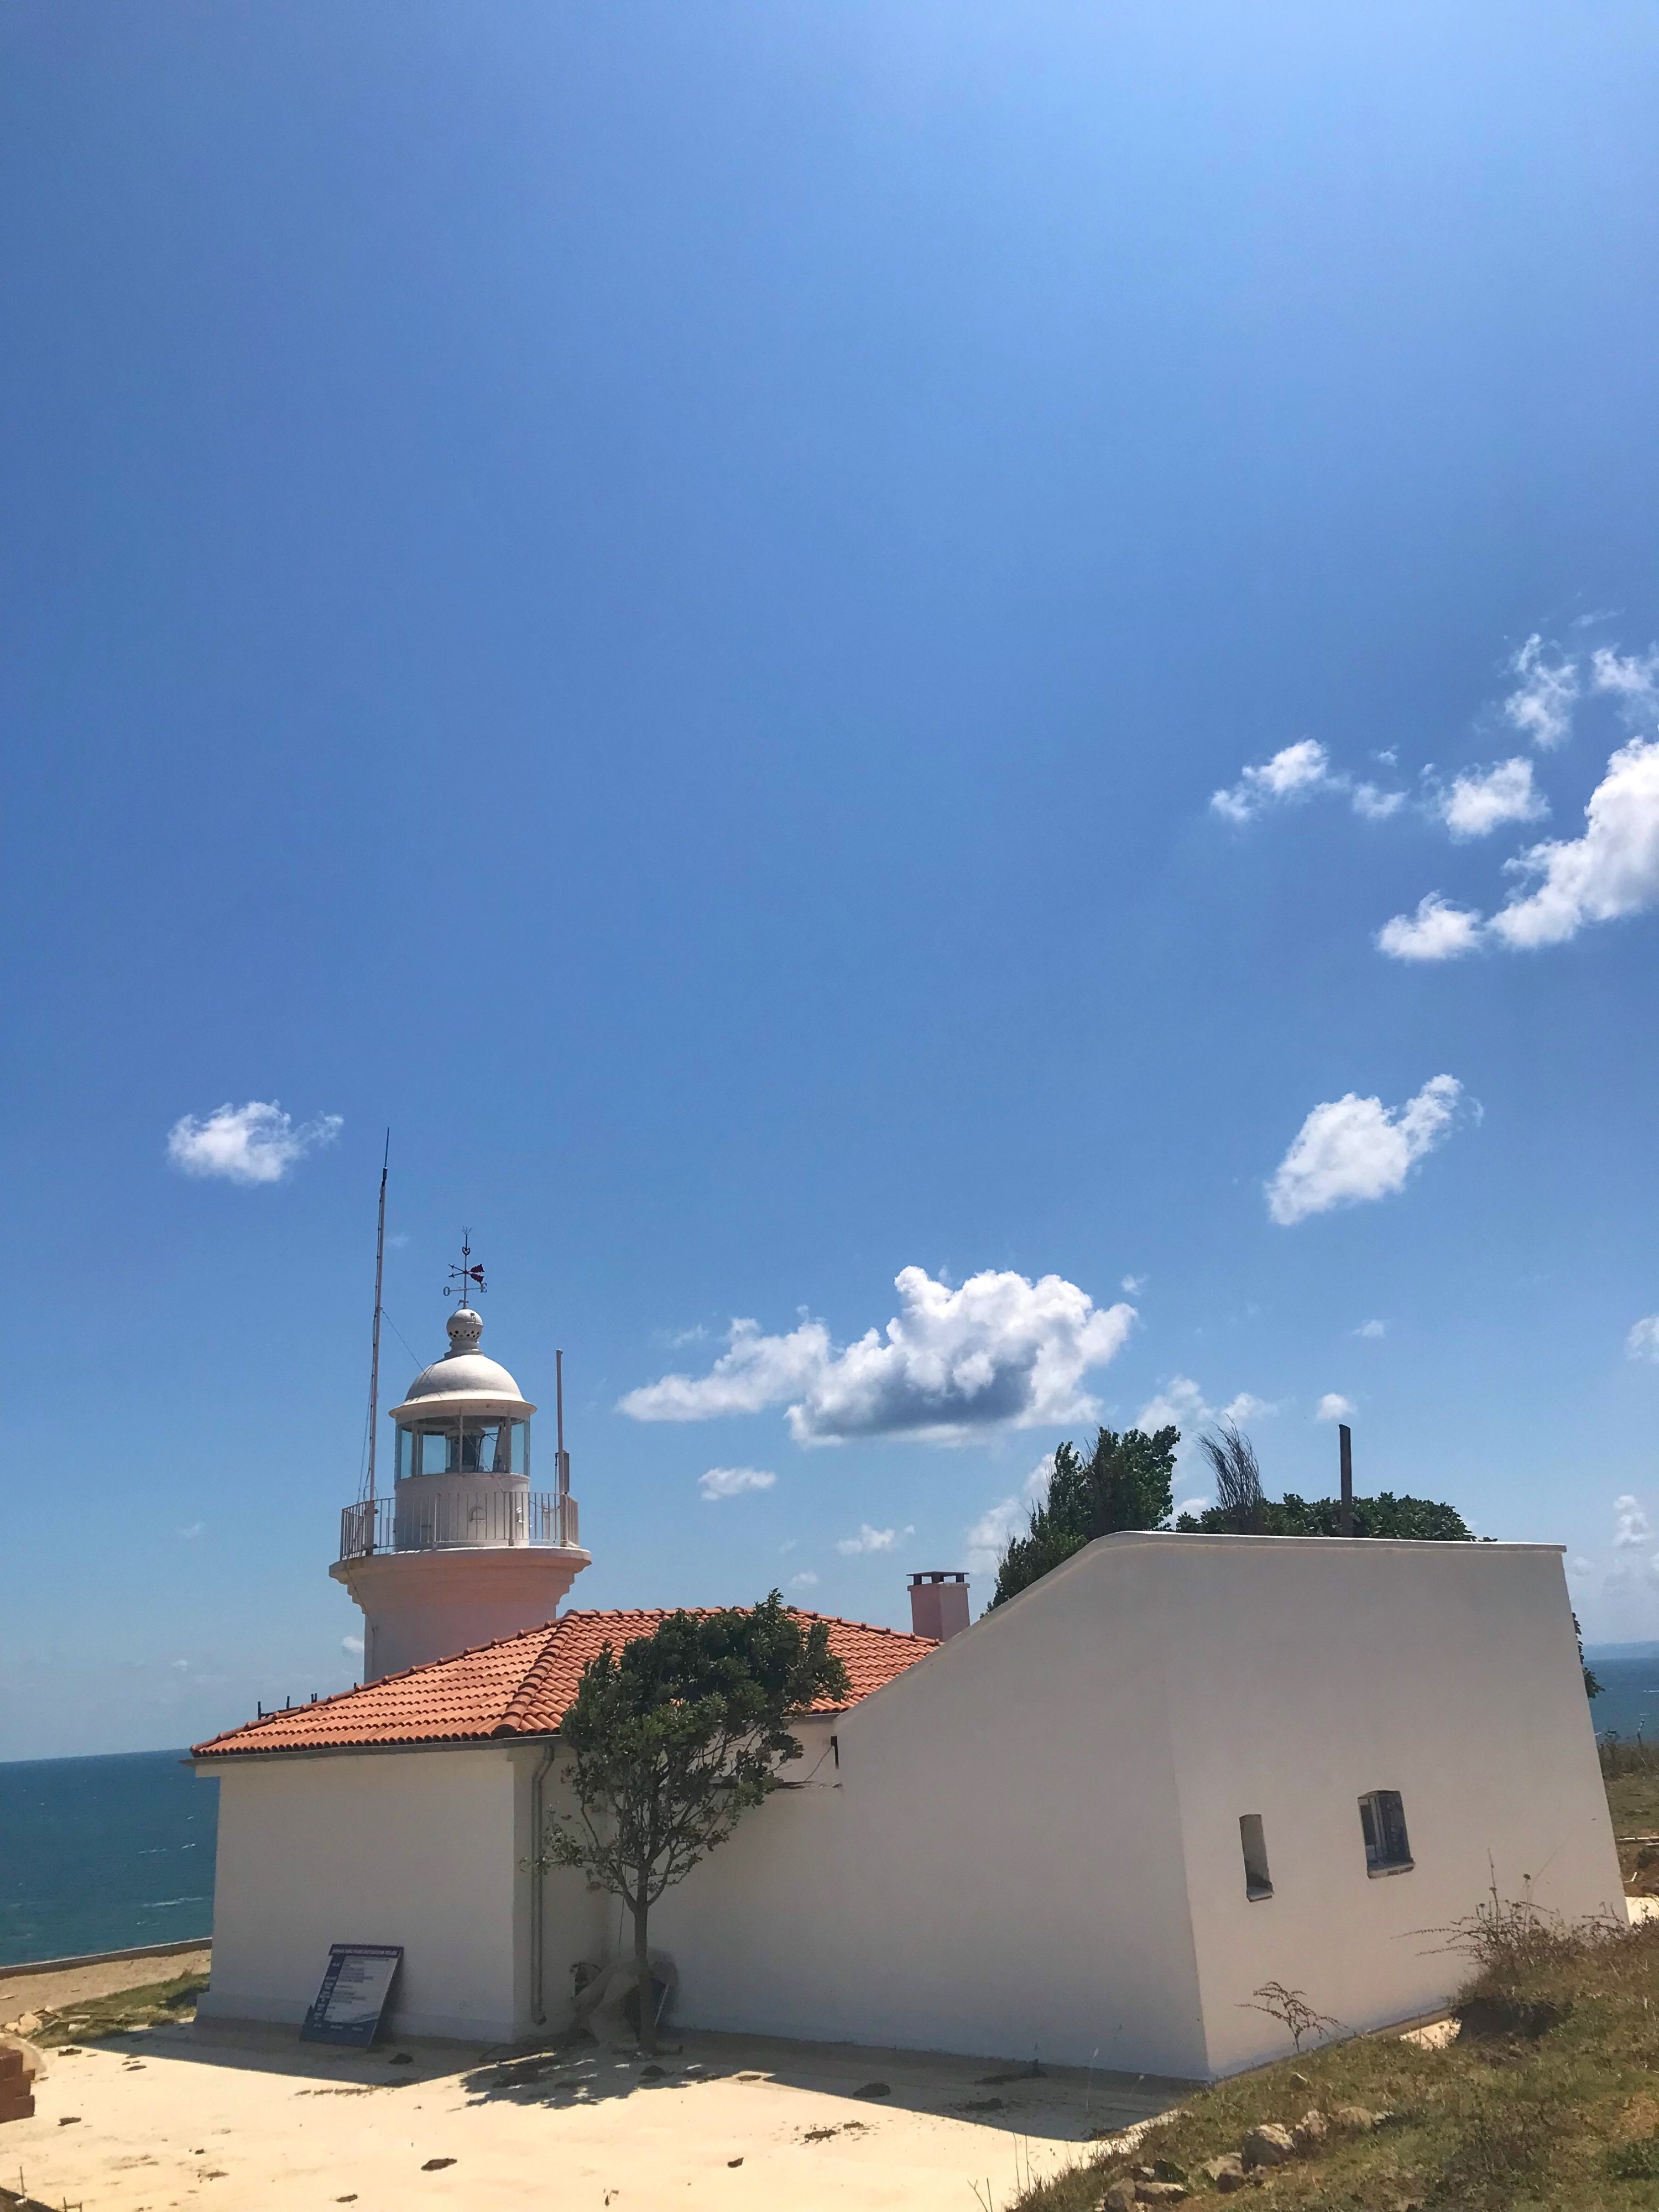 Iğneada Lighthouse, Kırklareli, Türkiye. (Photo by Özge Şengelen)